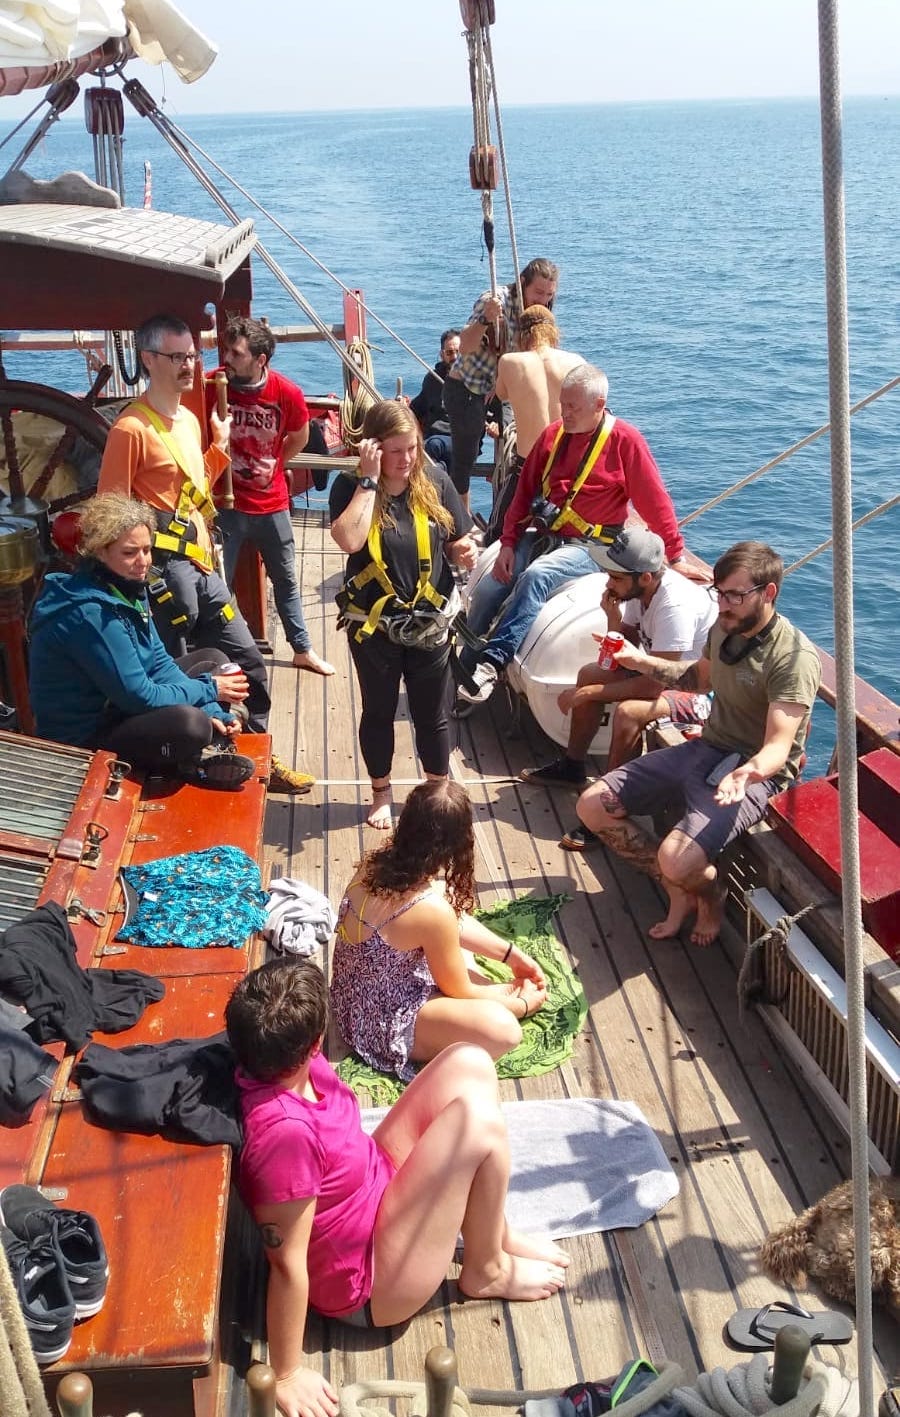 参加 Atyla 帆船在阳光明媚的日子团体活动 Kiel 周 2021 节 Covid19 免费无过滤器